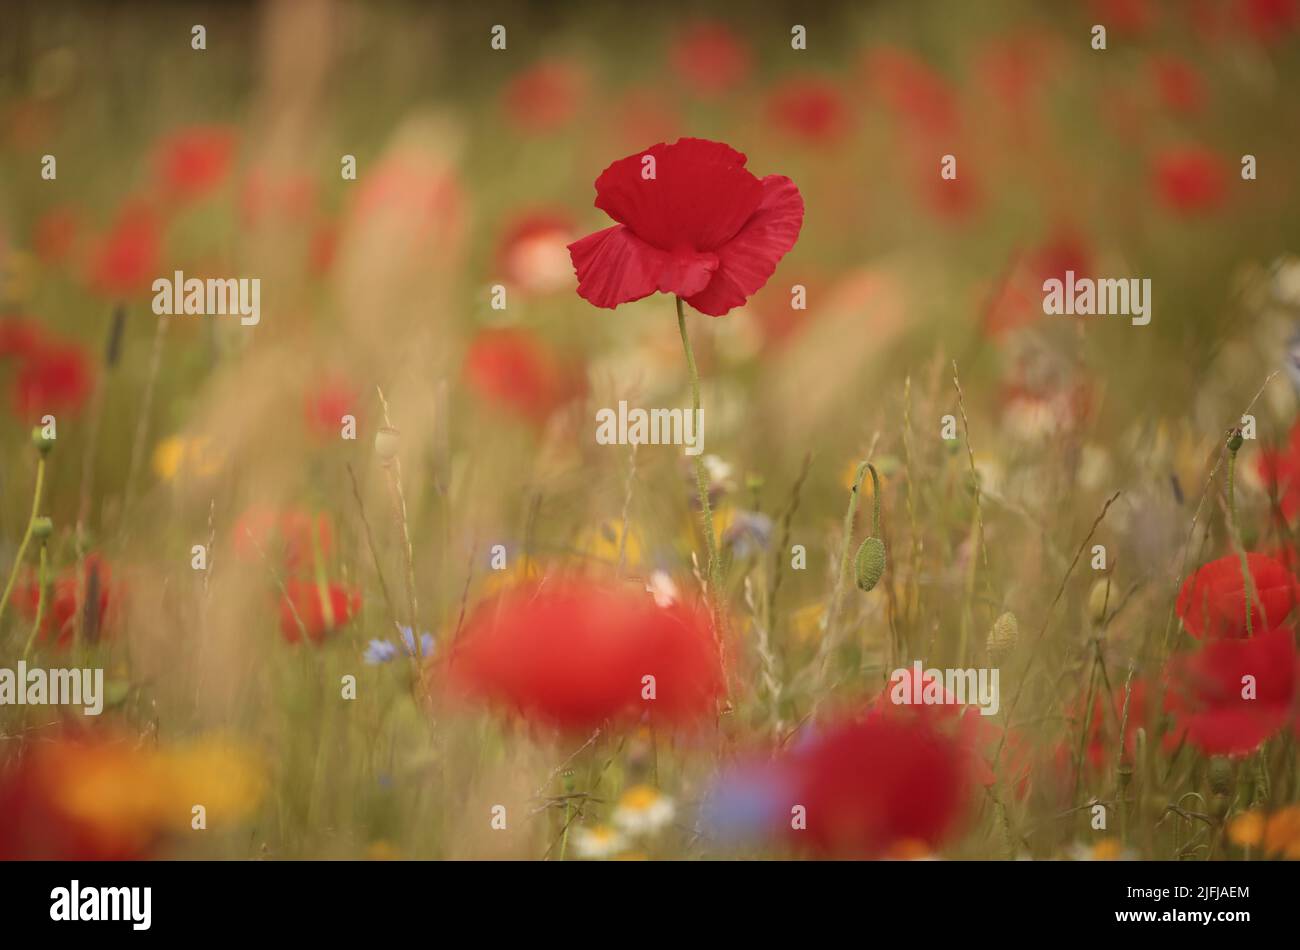 Poppys and meadow flowers Stock Photo - Alamy